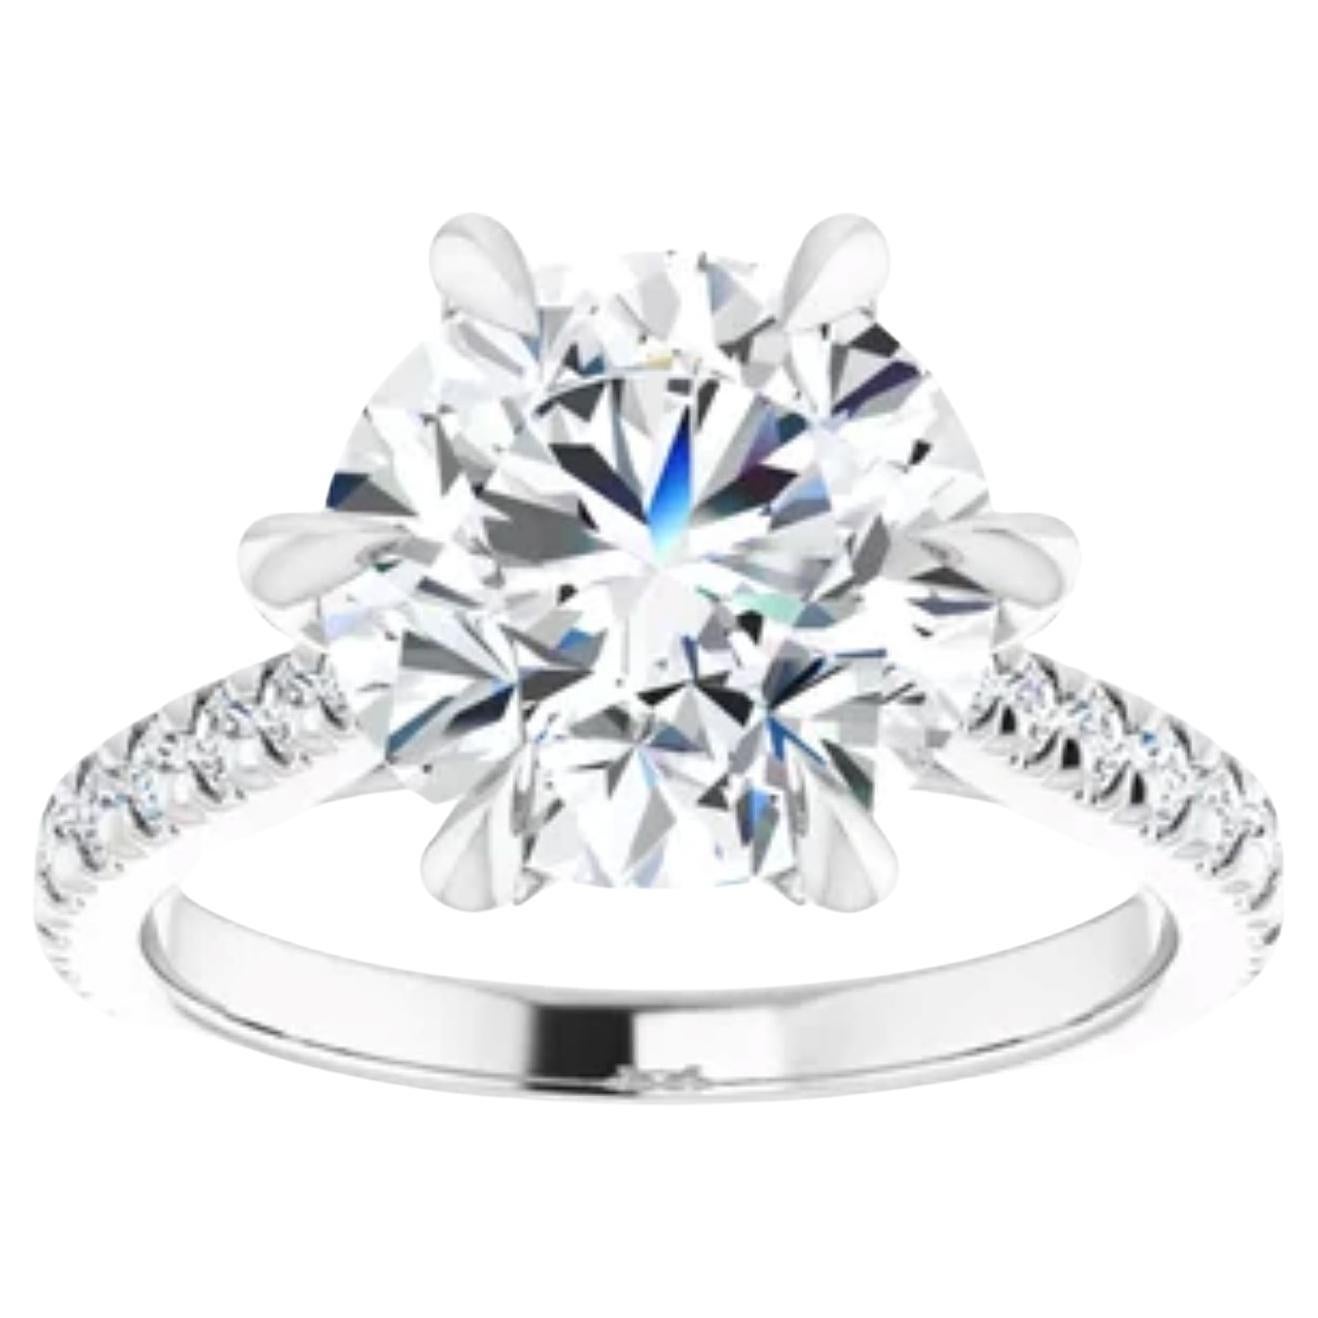 4 carat Round Engagement Ring Mounting